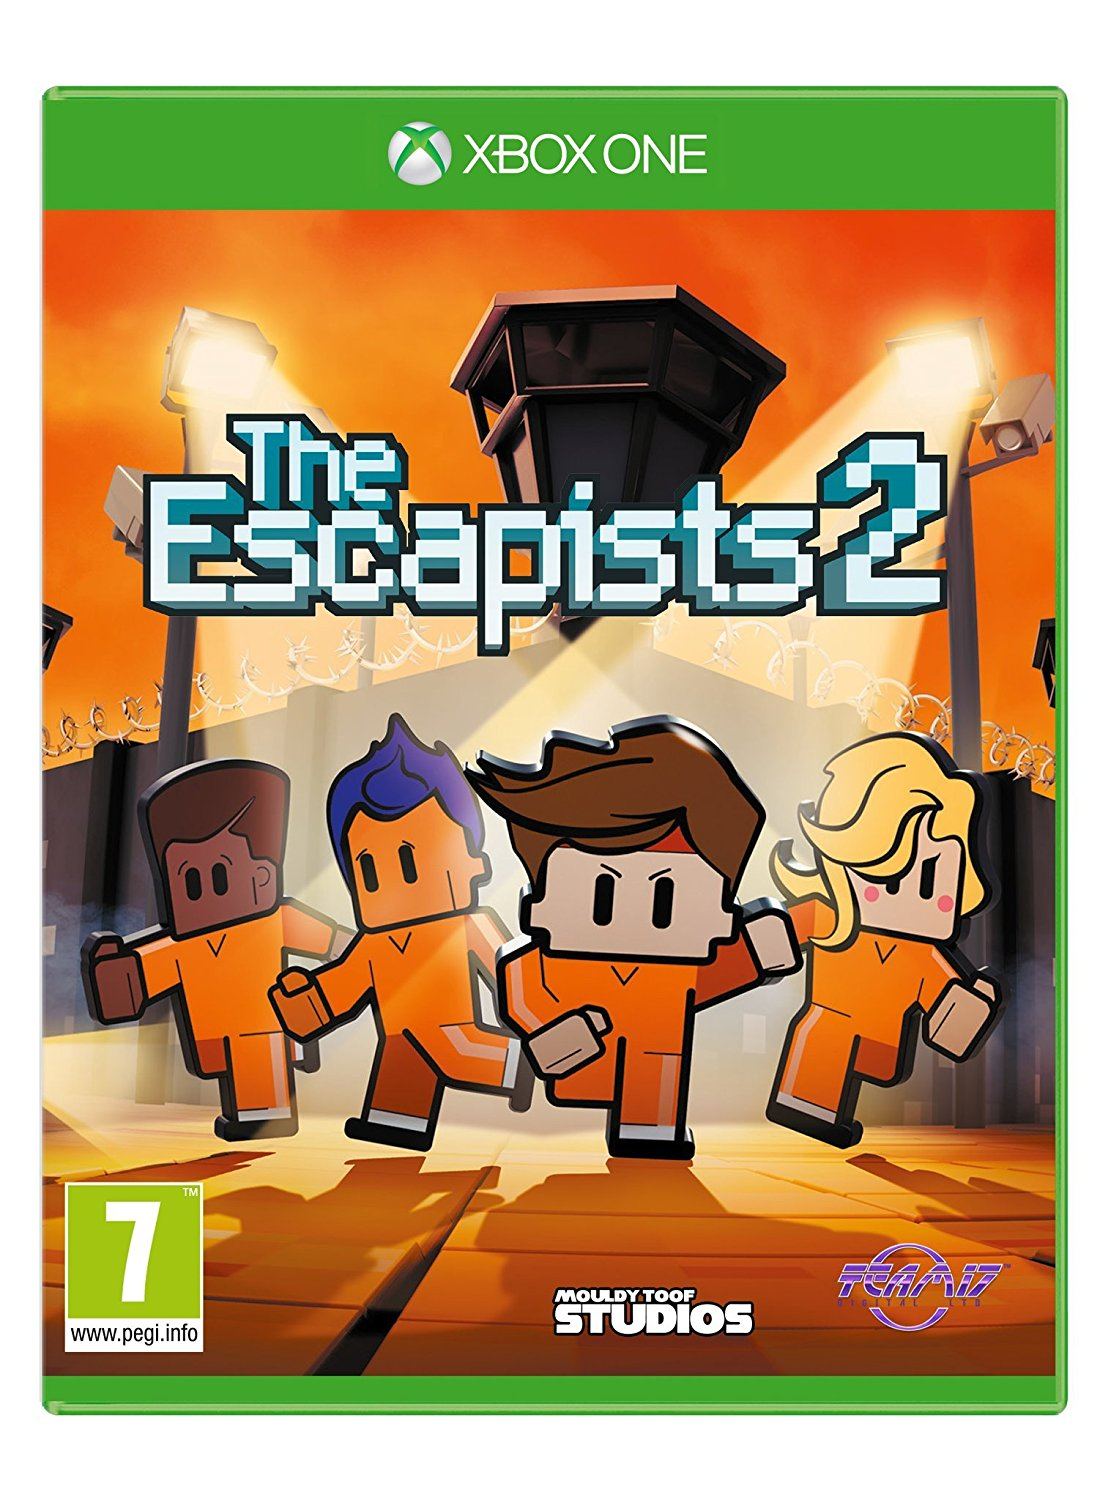 The Escapists 2 - Glorious Regime Prison